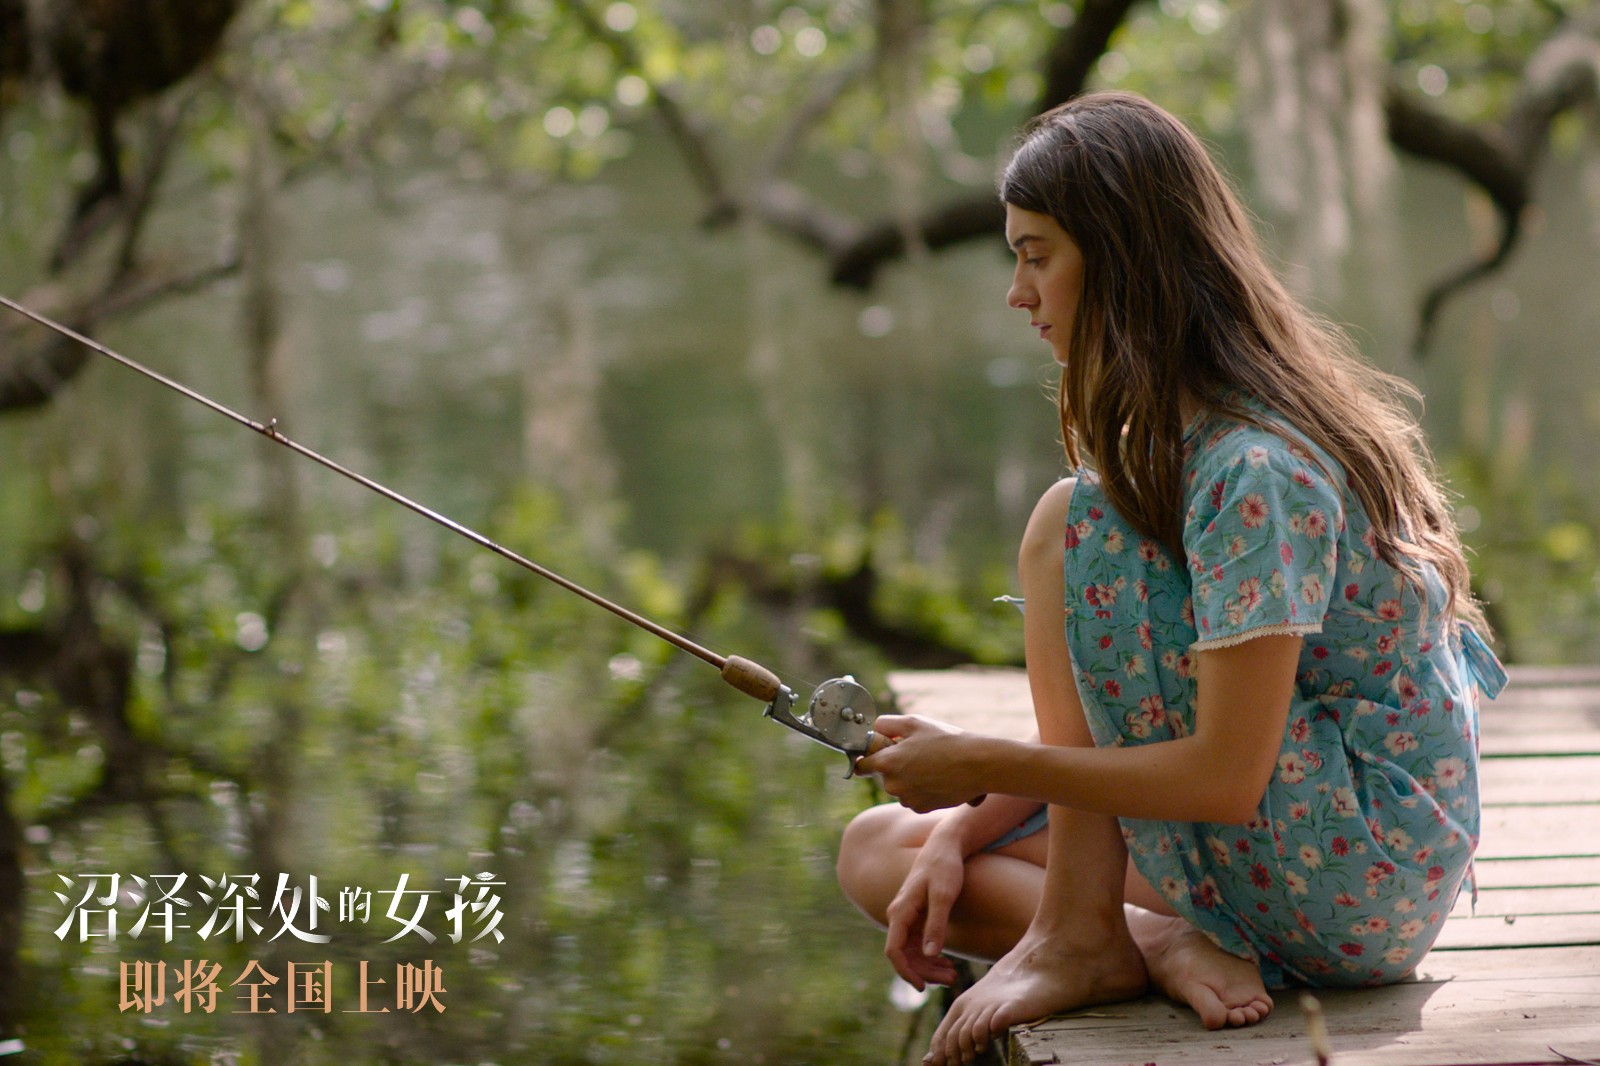 《沼泽深处的女孩》发布“生存之痛”片段 小基娅开启独自求生模式